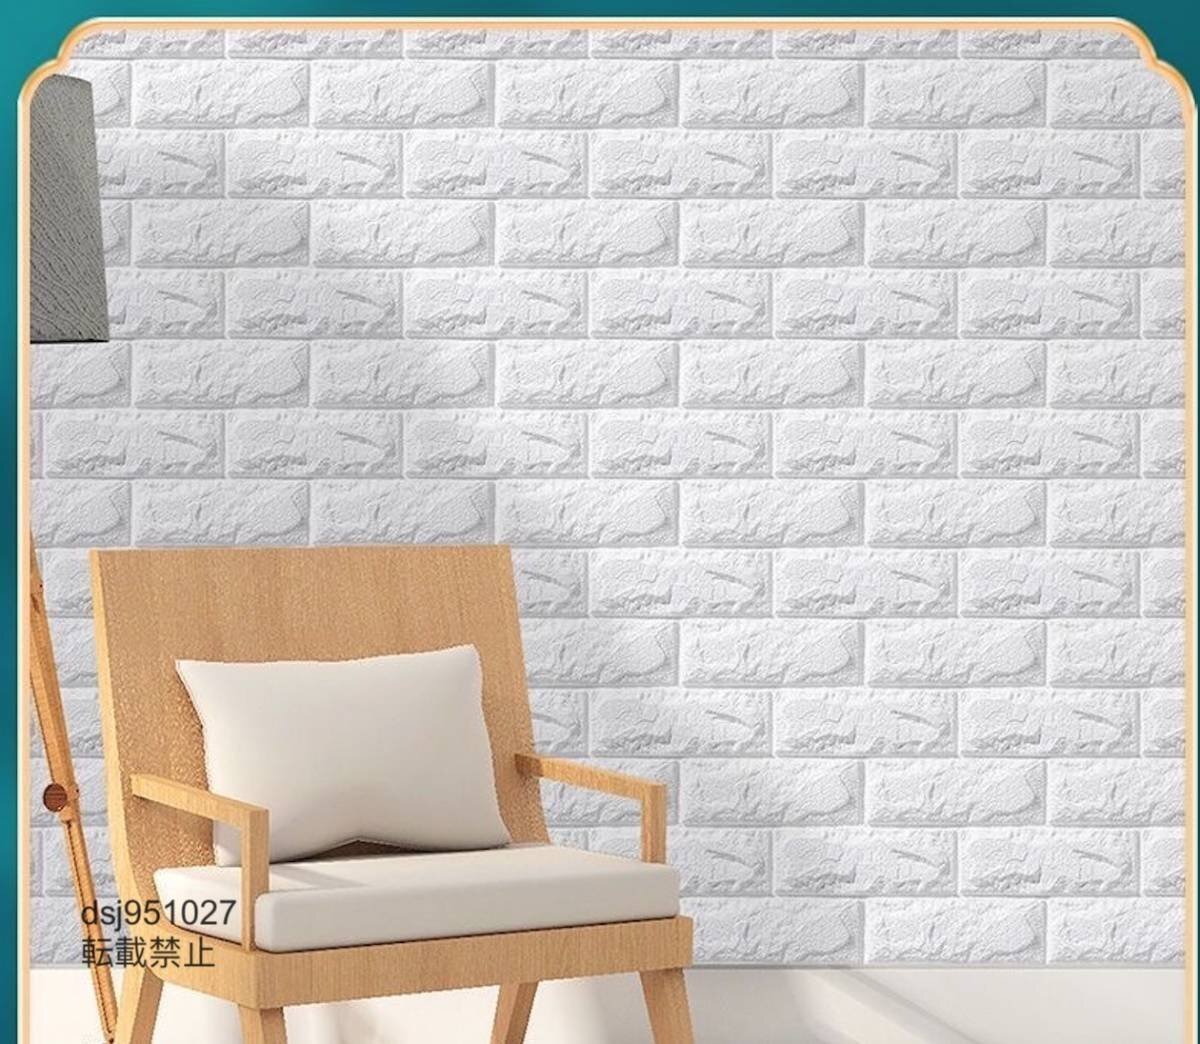 ホワイト はがせる壁紙シール 壁紙シール 防水 防汚 耐油 耐熱 3D壁紙 DIY 壁 キッチン 家具 70cmx20m_画像4